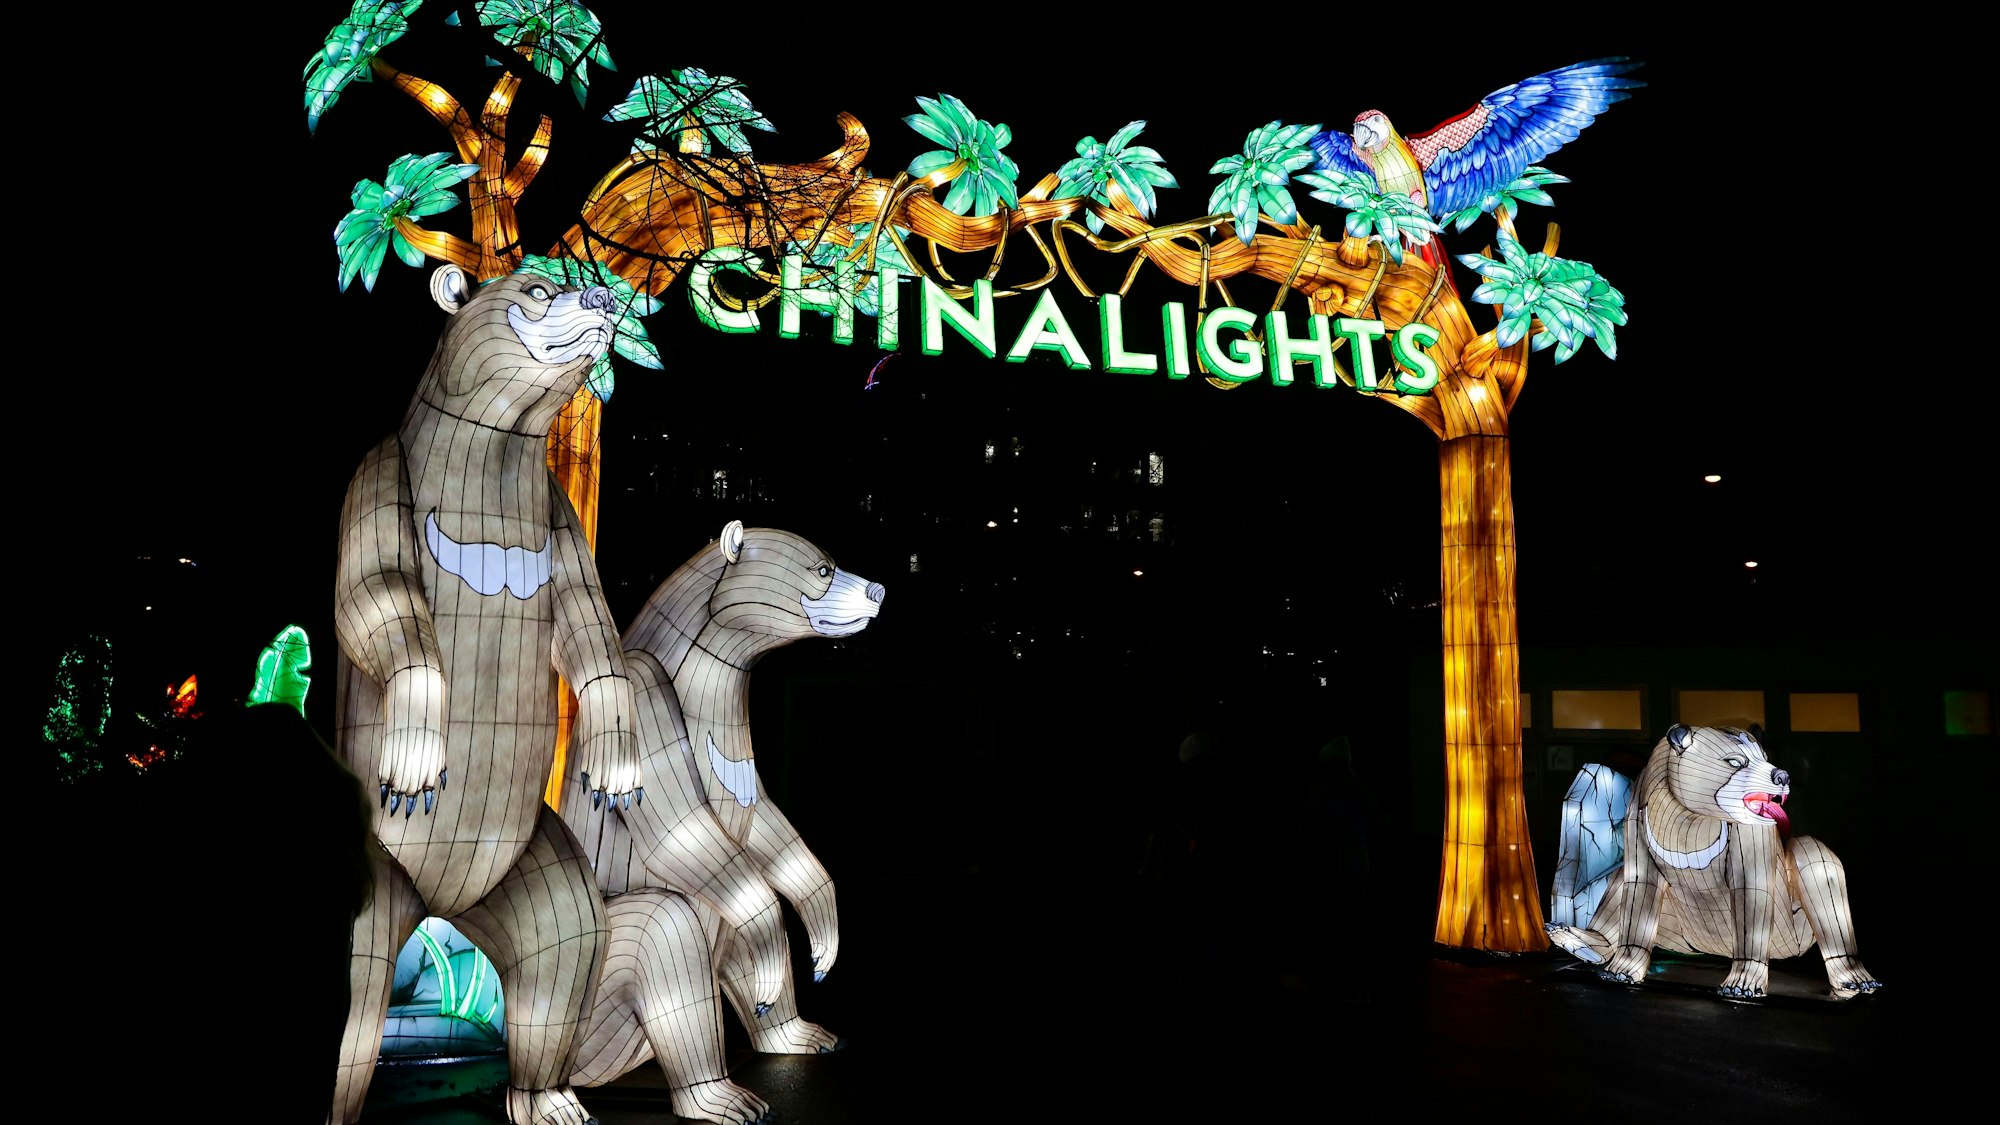 Zu sehen ist das beleuchtete Eingangstor mit der Aufschrift "China Lights" und Bären.